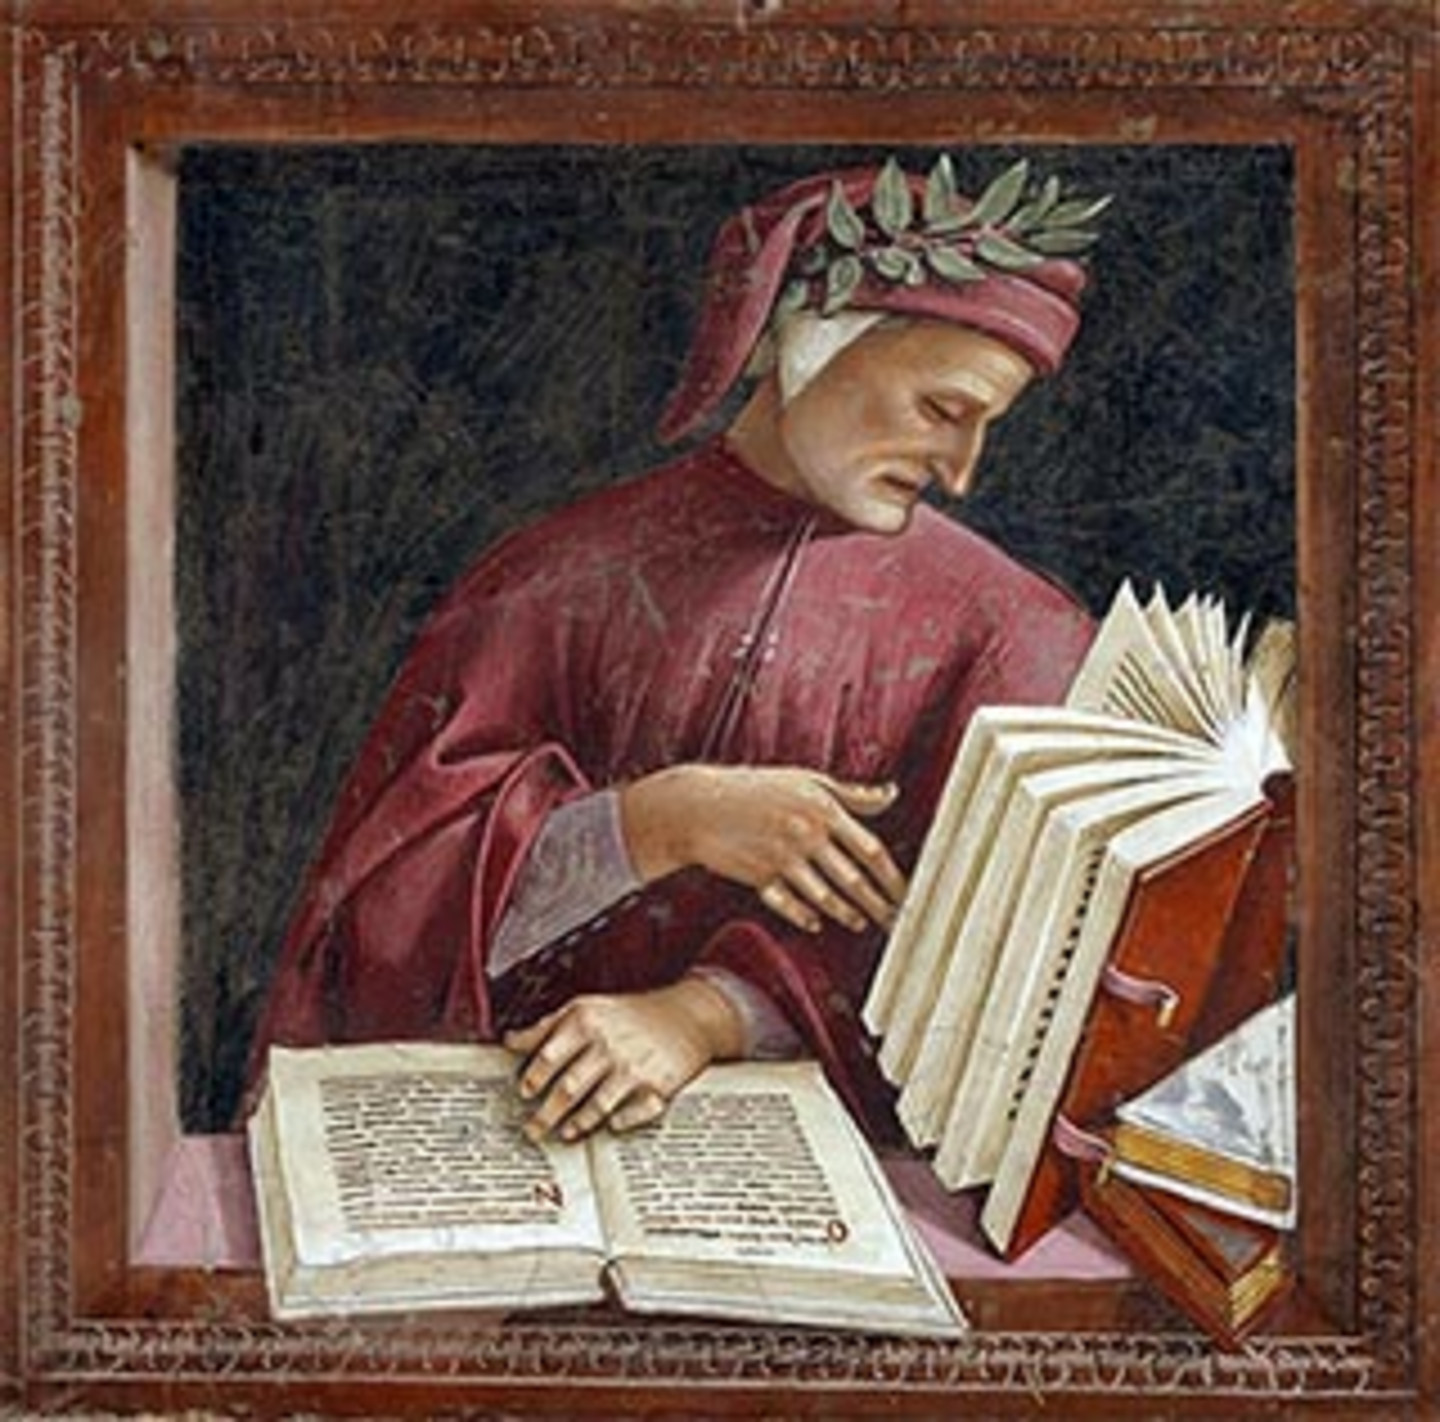 Ein Porträt von Dante Alighieri wie er den Blick in ein Buch wirft; ein weiteres Buch liegt aufgeschlagen vor ihm.